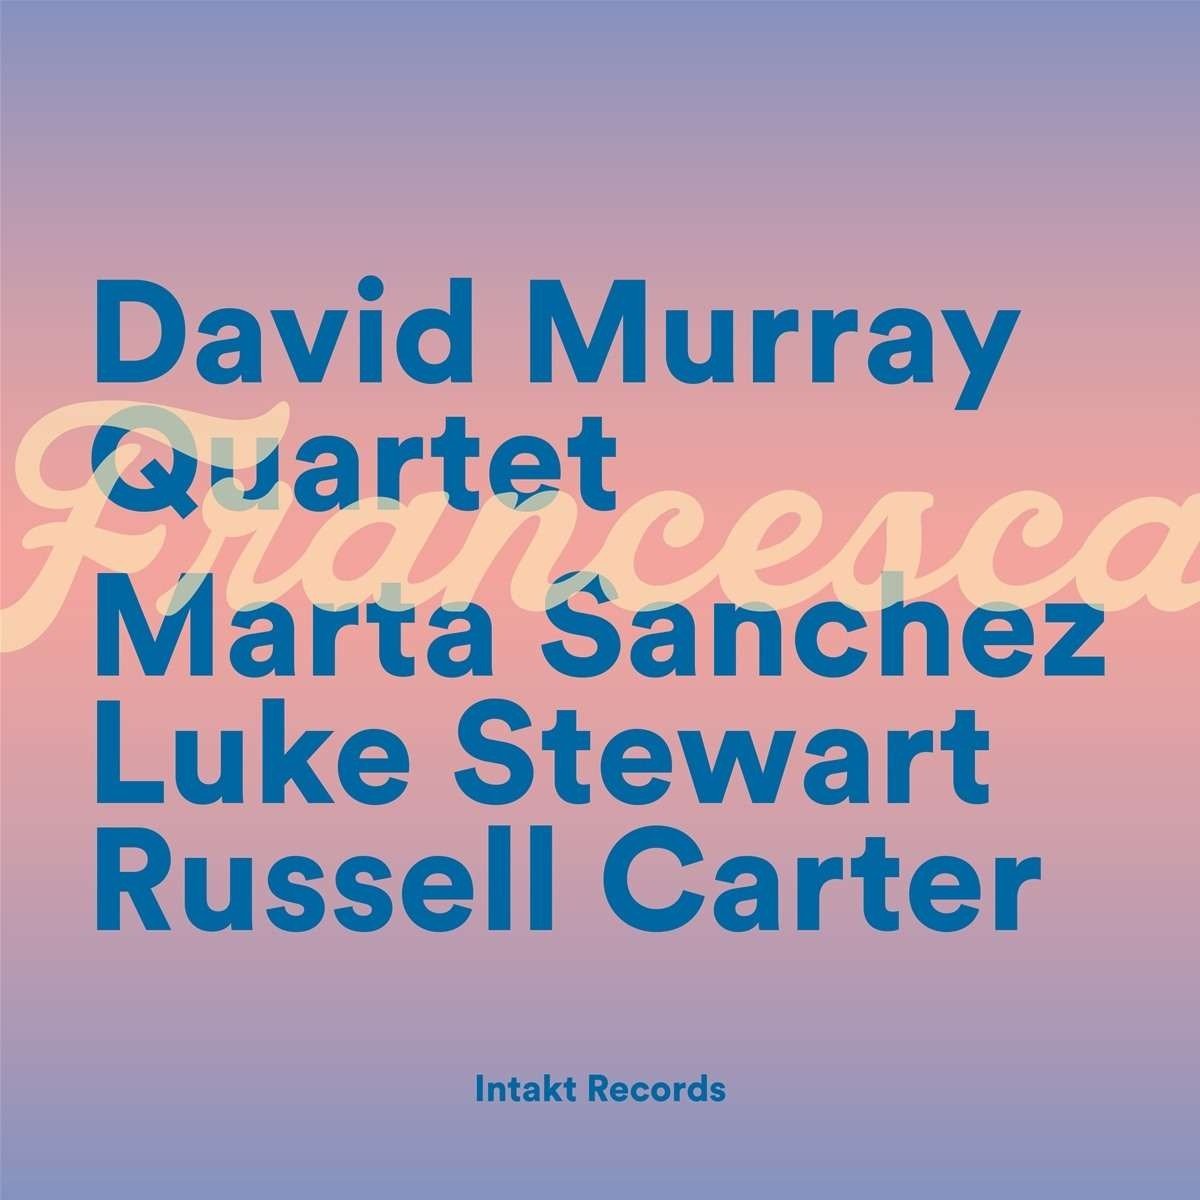 CD Shop - DAVID MURRAY QUARTET FRANCESCA